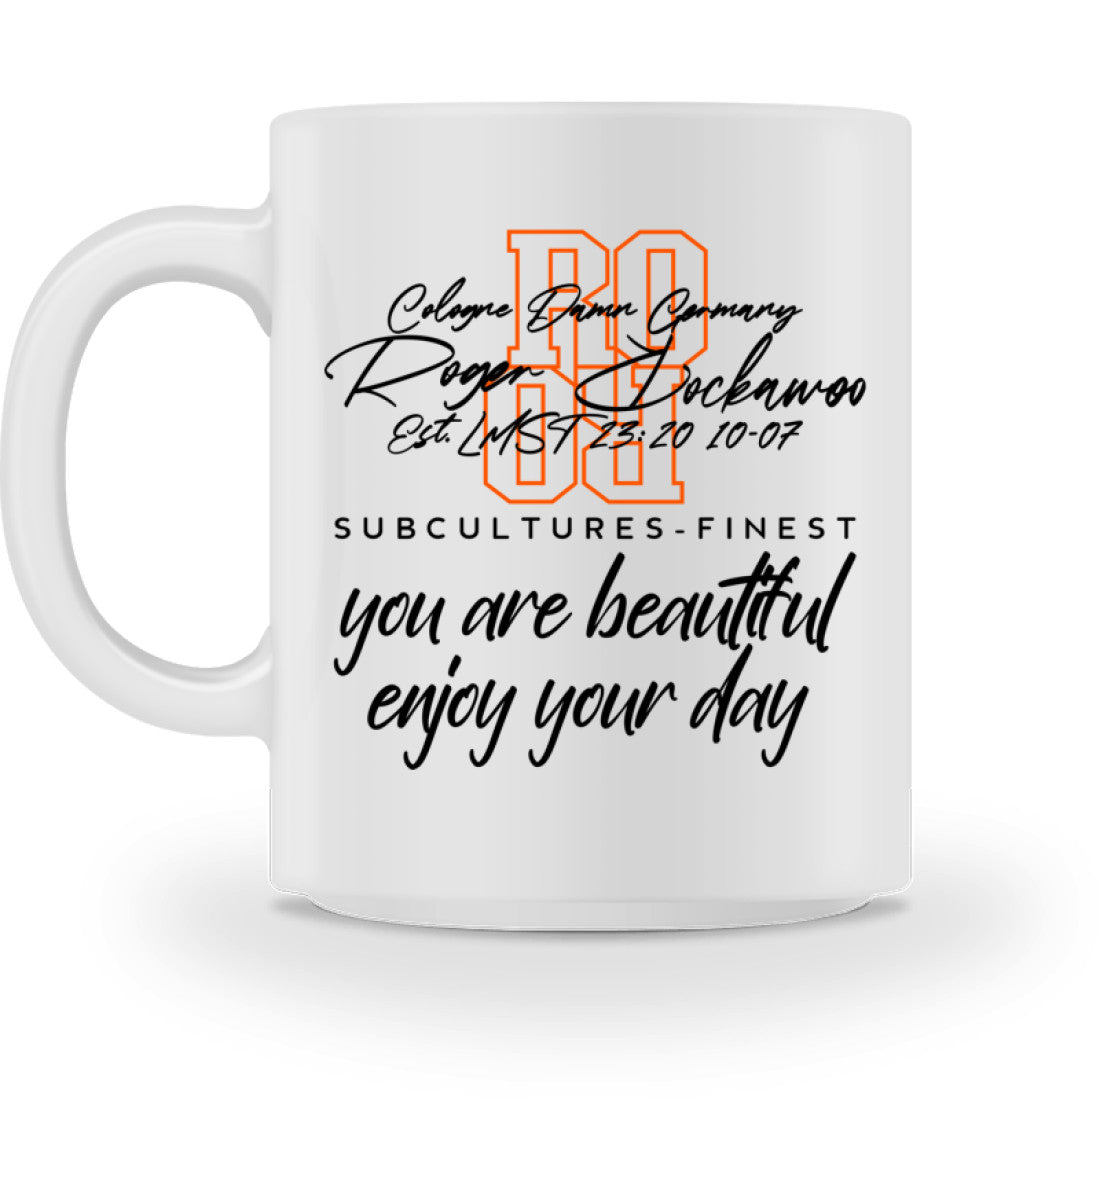 Tasse aus Keramik bedruckt mit dem Design der you are beautiful Edition im Roger Rockawoo Clothing Webshop Farbe weiss